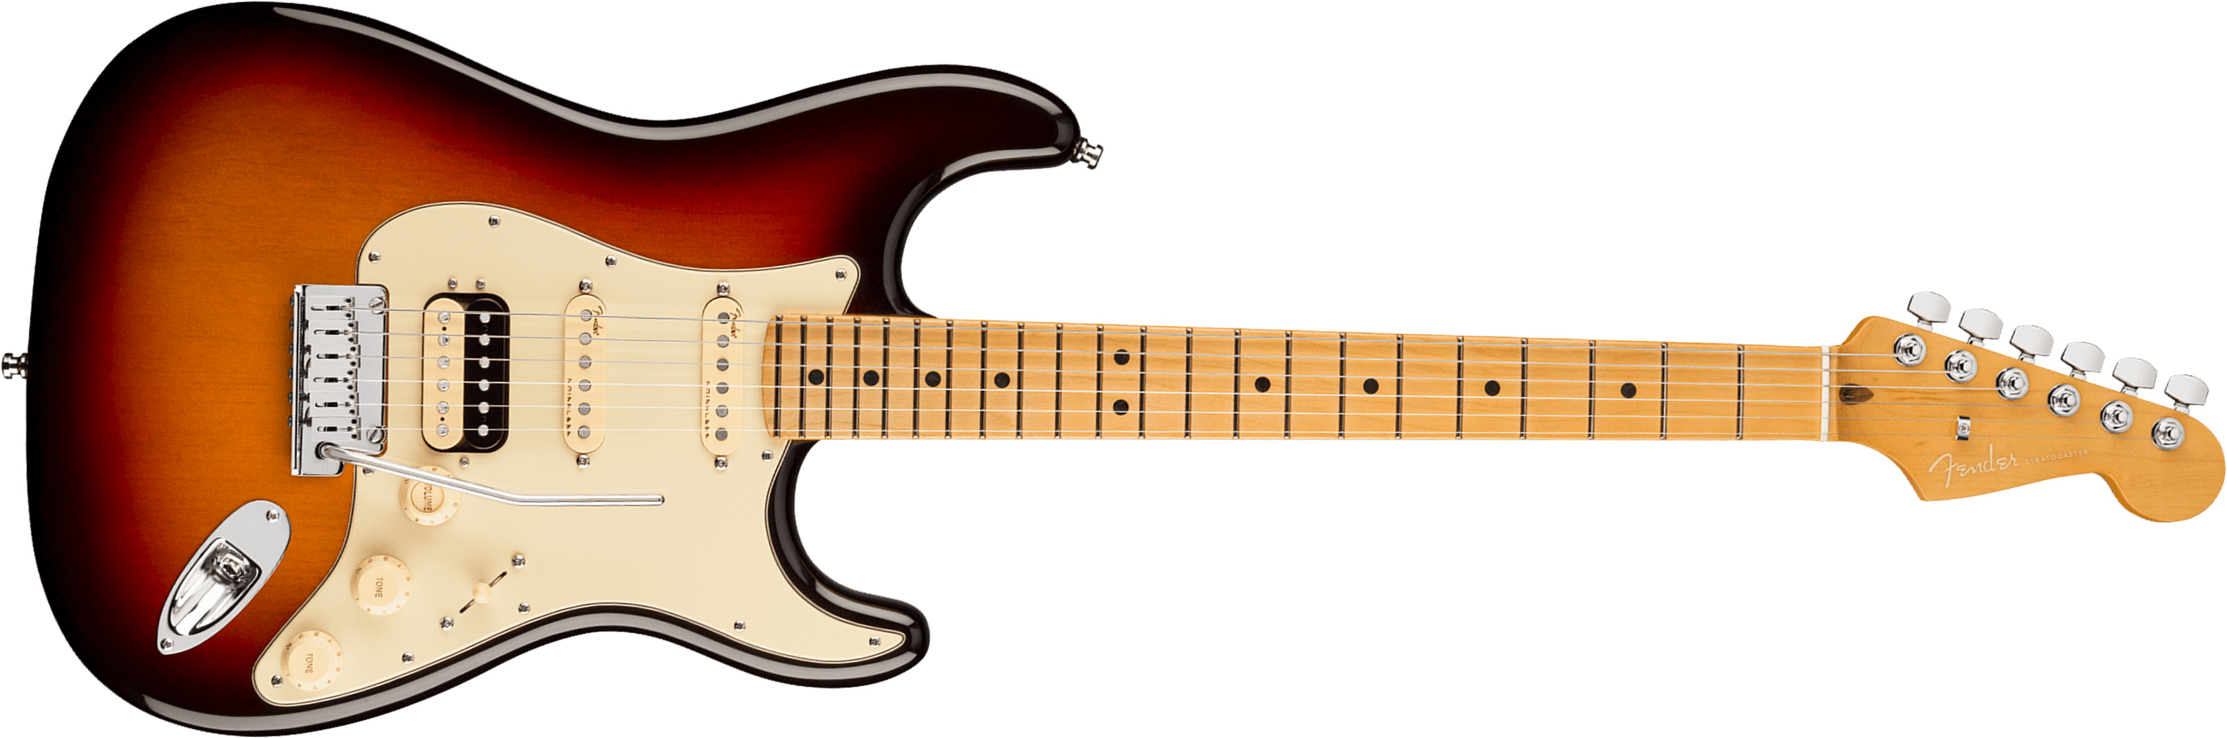 Fender Strat American Ultra Hss 2019 Usa Mn - Ultraburst - Elektrische gitaar in Str-vorm - Main picture